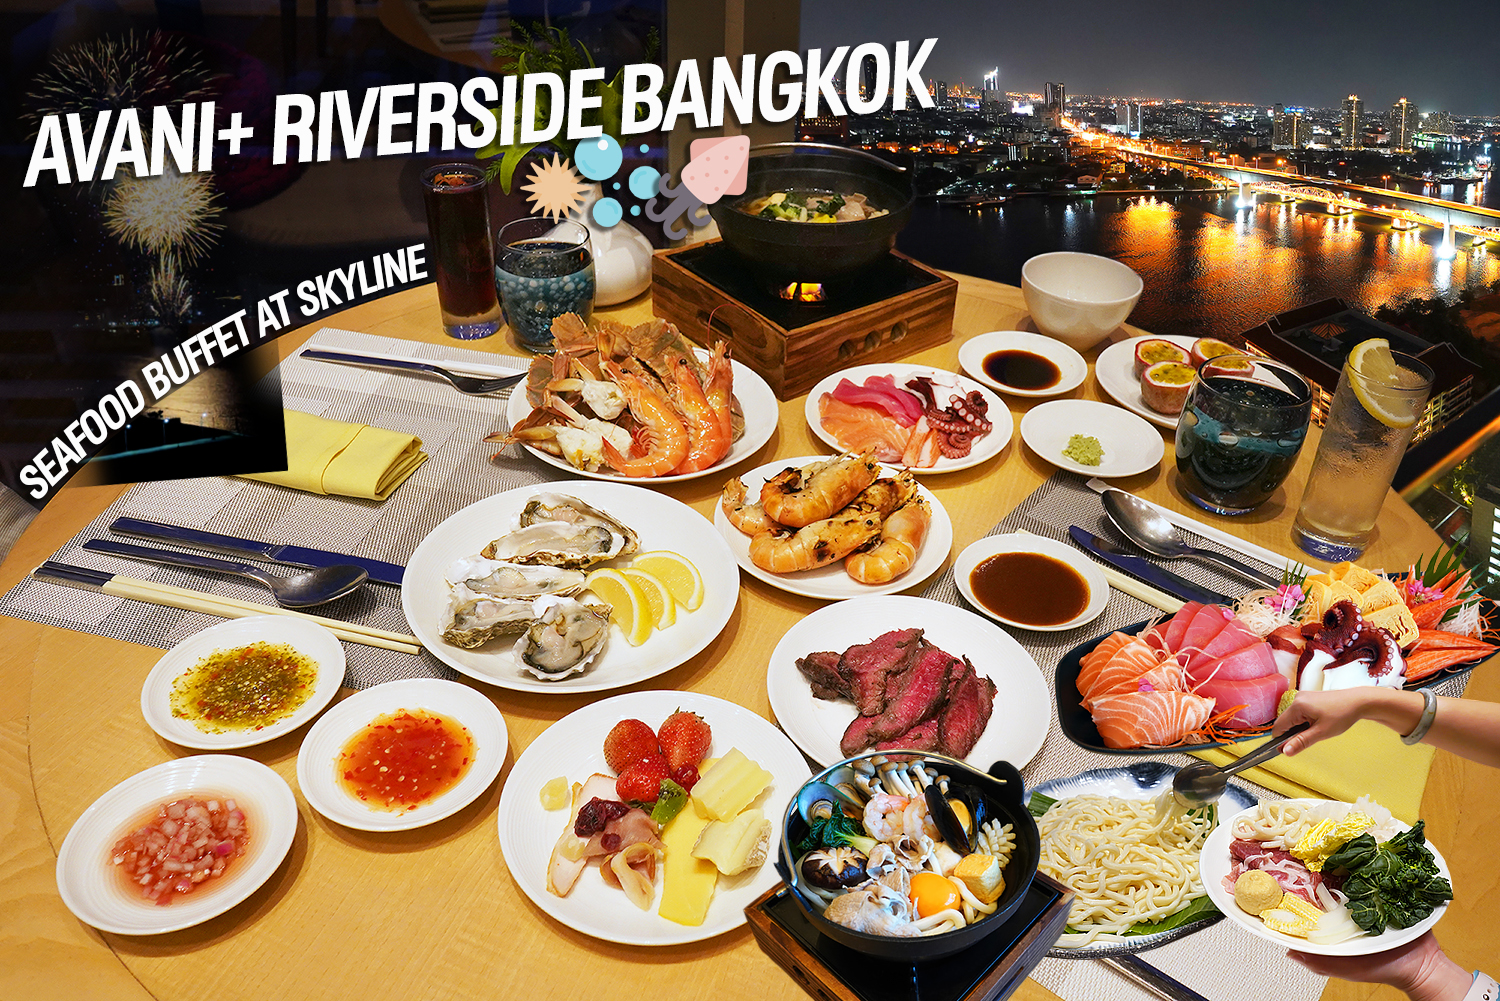 พากิน Skyline Seafood Buffet บุฟเฟ่ต์อาหารทะเลสุดพรีเมียม อาหารนานาชาติ วิวโค้งแม่น้ำเจ้าพระยา​ยามค่ำคืน @Avani+ Riverside Bangkok Hotel